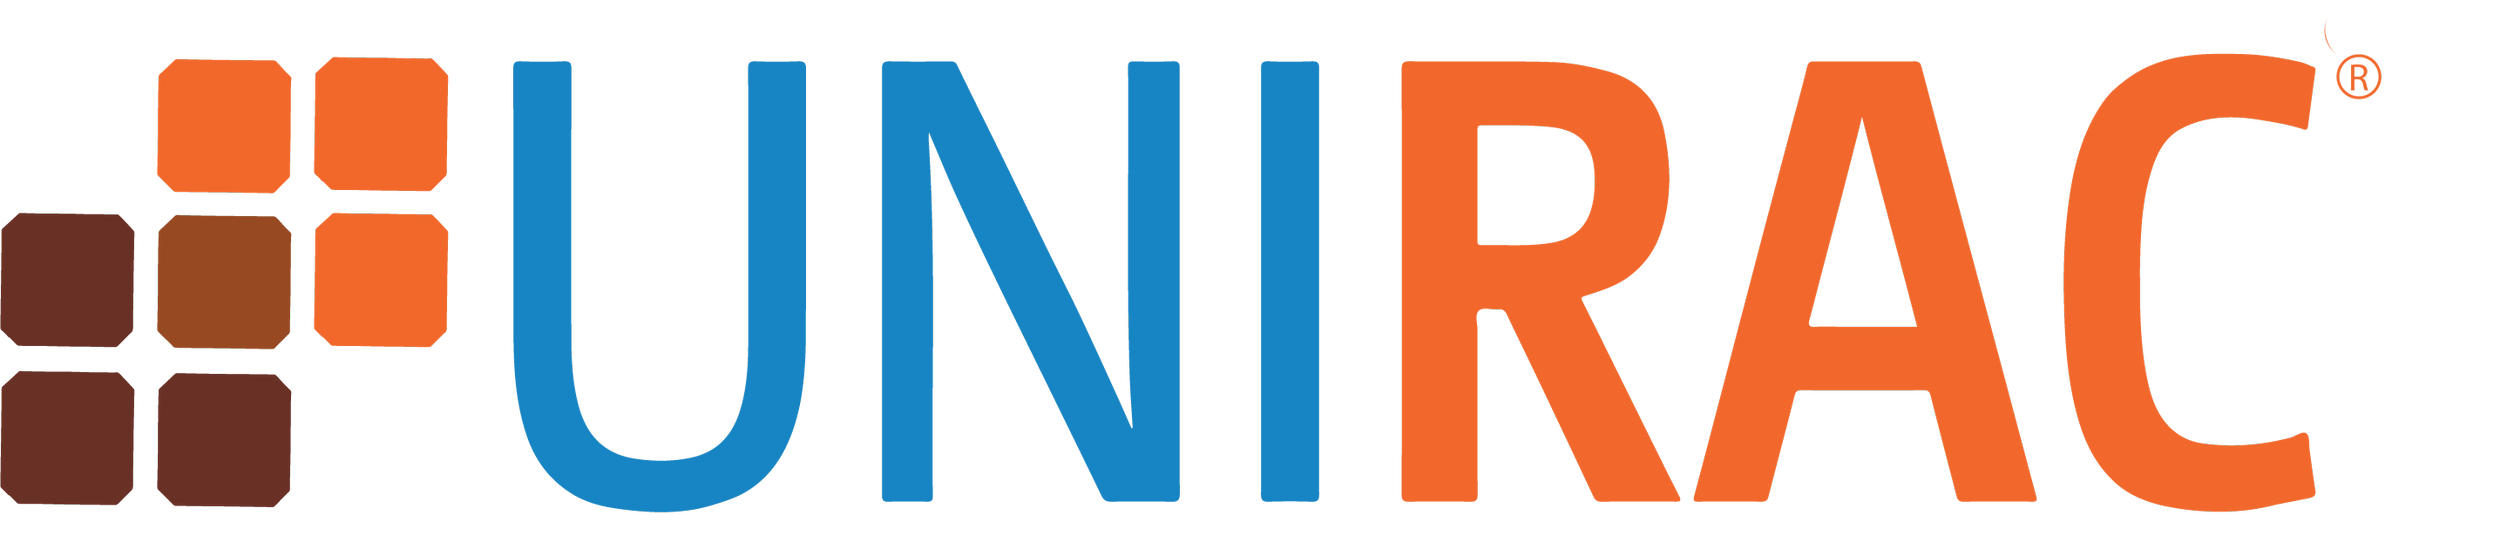 Unirac-full-logo.png